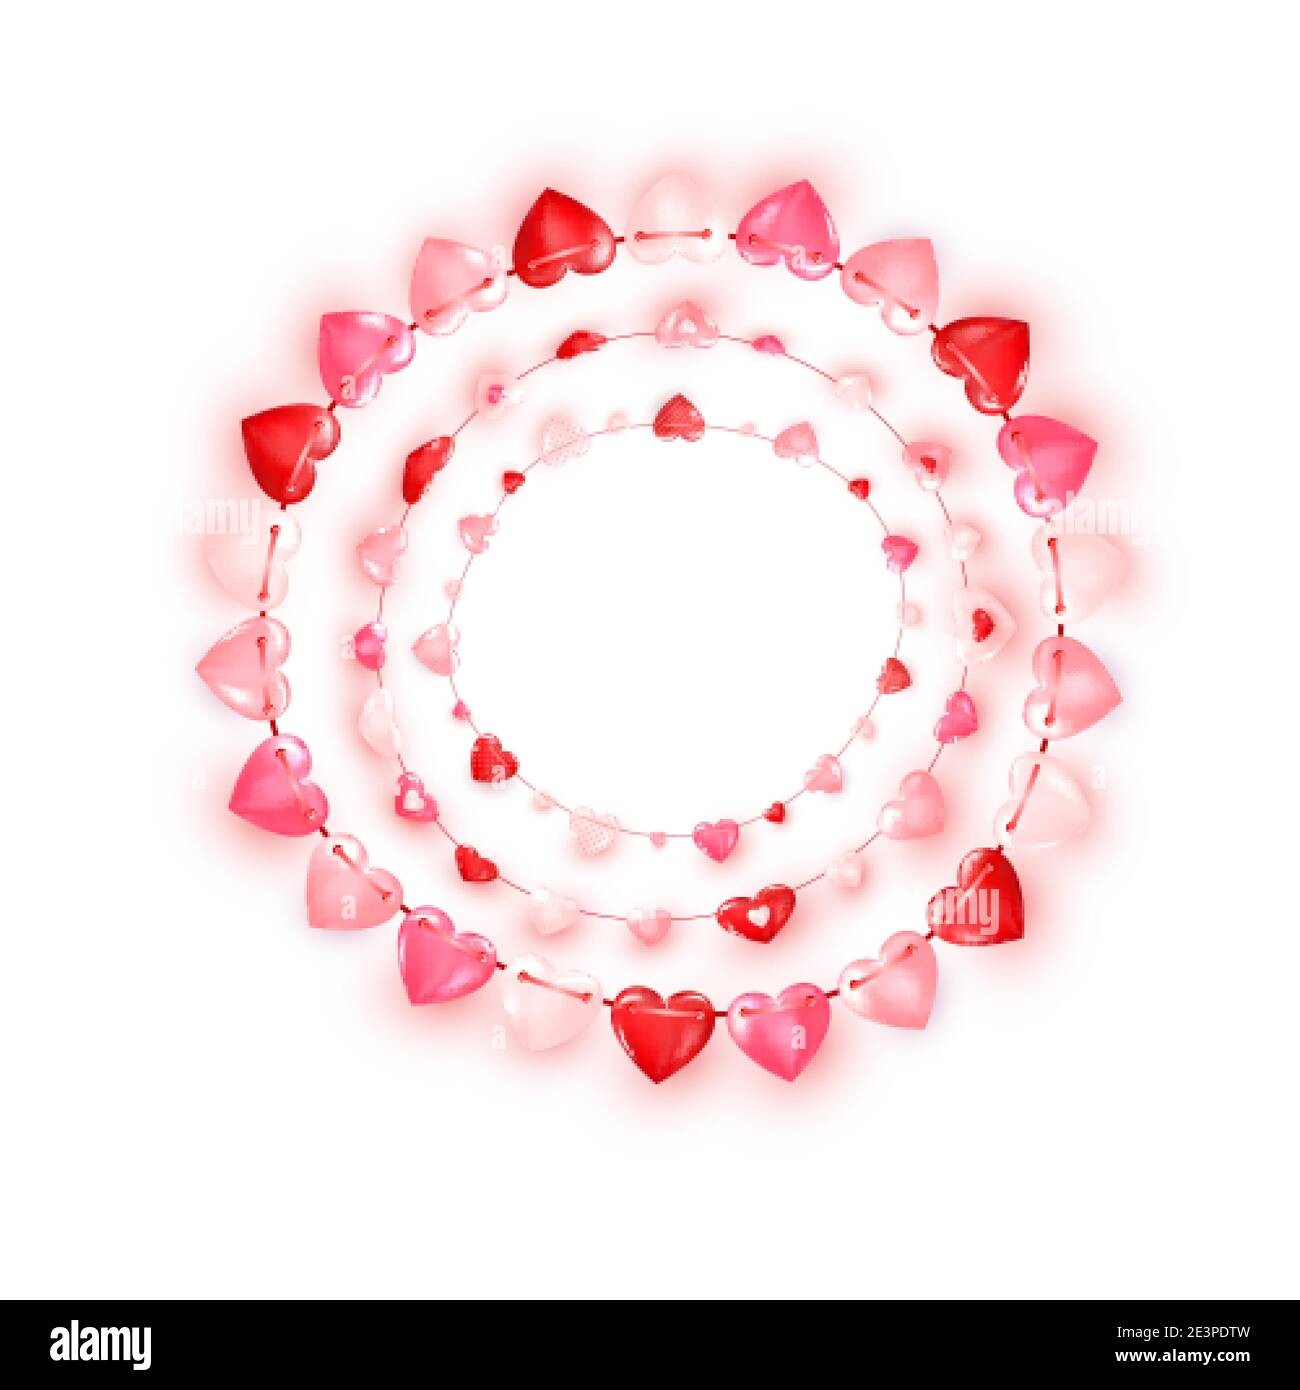 Cerchio decorazione ghirlanda di cuori rossi e rosa. Biglietto d'auguri per San Valentino o elementi decorativi per striscioni. Vettore Illustrazione Vettoriale